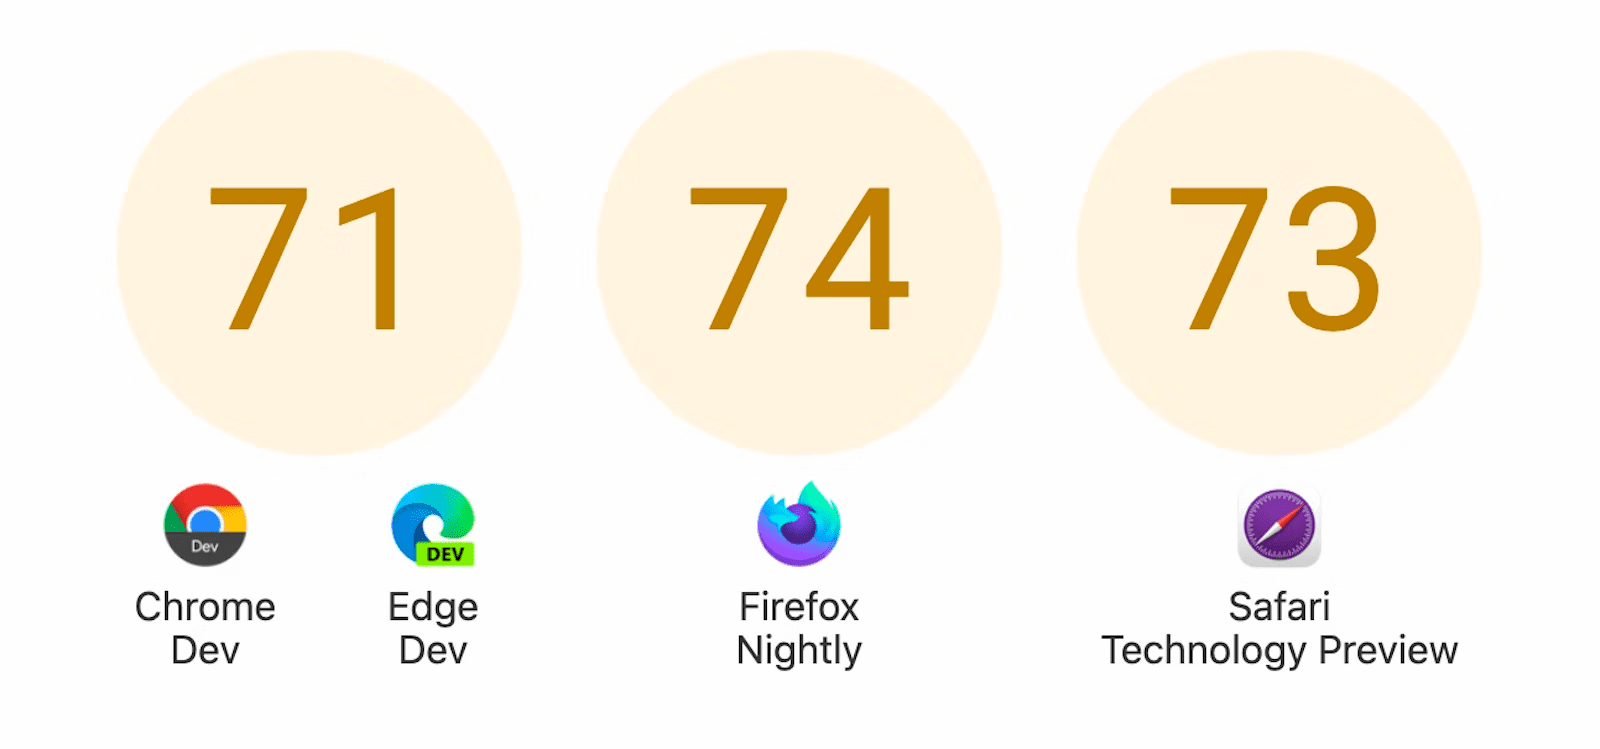 Mostrando três círculos com pontuações: 71 para Chrome Dev e Edge Dev, 74 para o Firefox Nightly e 73 para a Safari Technology Preview.